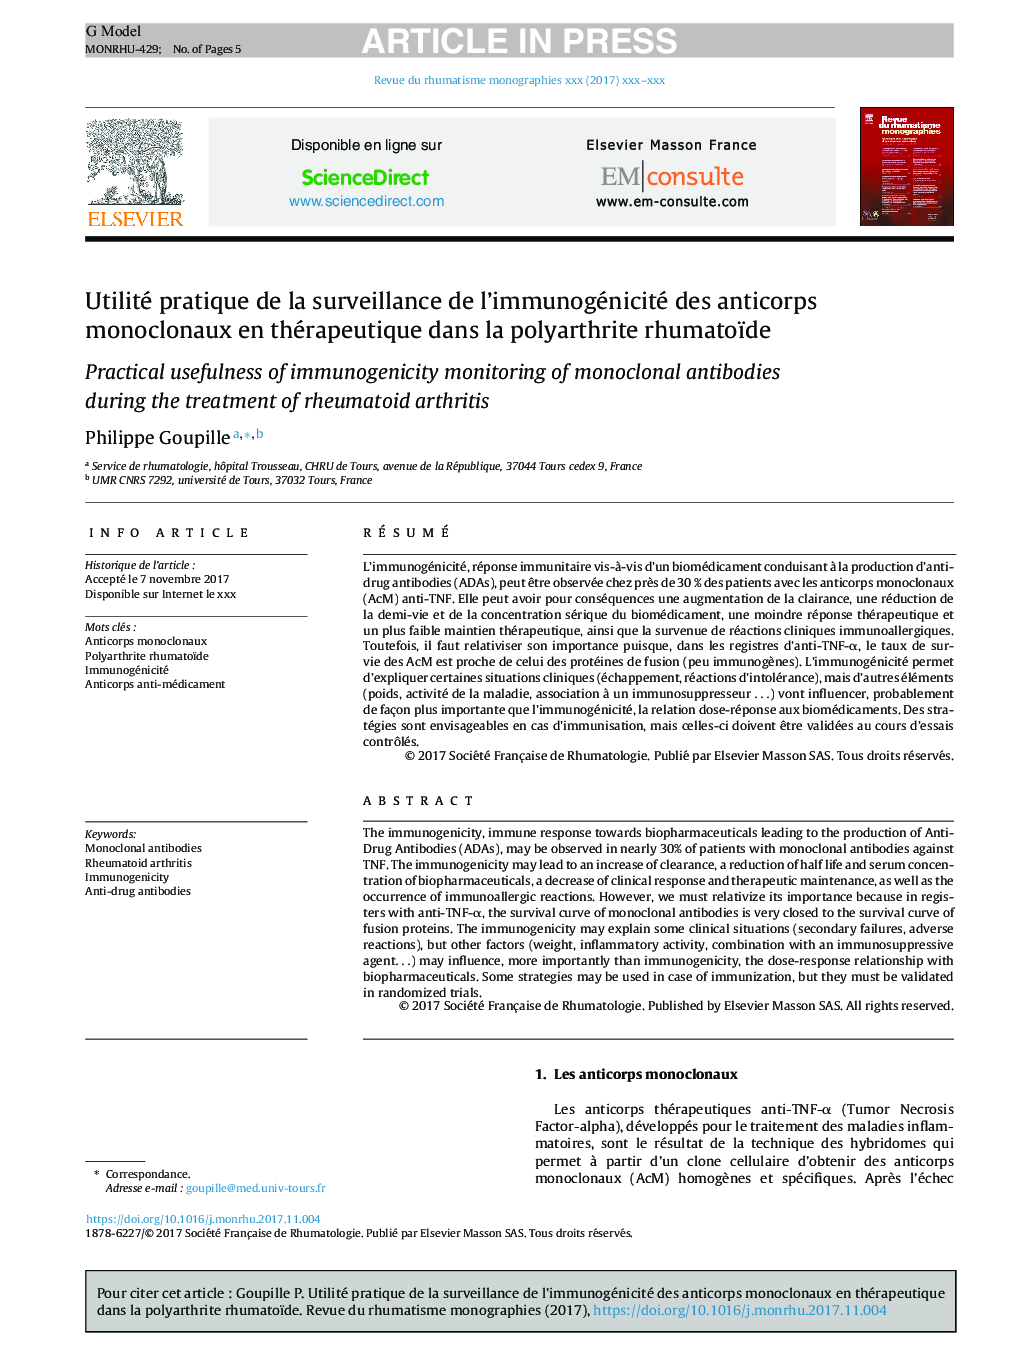 Utilité pratique de la surveillance de l'immunogénicité des anticorps monoclonaux en thérapeutique dans la polyarthrite rhumatoïde